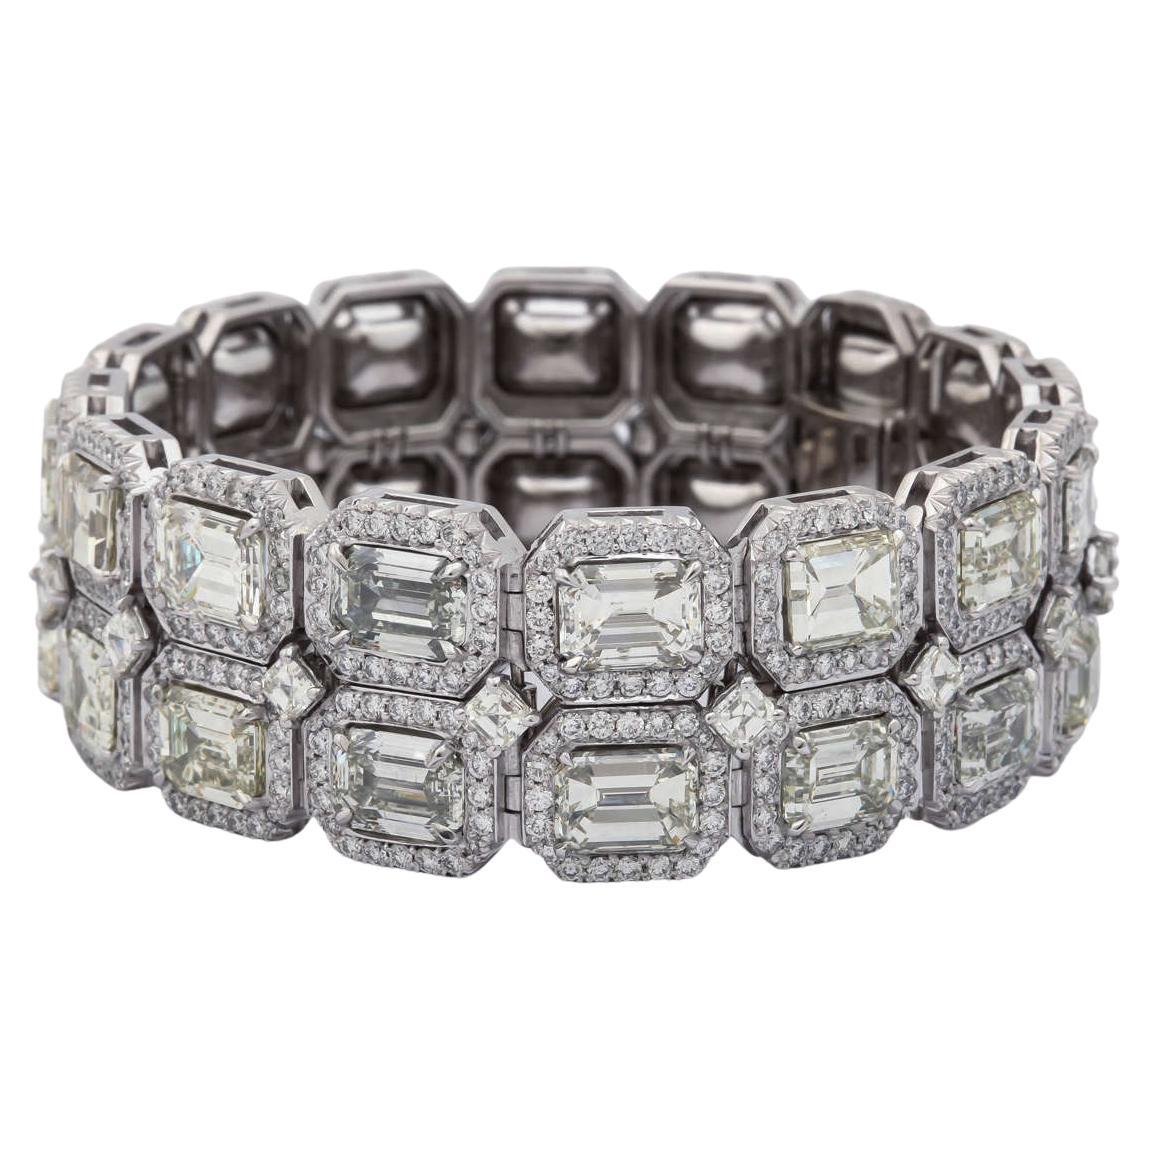 Dieses absolut einzigartige Armband besteht aus 50 Karat Diamanten, jeder Diamant im Smaragdschliff hat zwischen 1,00 und 2,00 Karat. 

Satz in Platinfassung
Diana M. ist seit über 35 Jahren ein führender Anbieter von hochwertigem Schmuck.
Diana M